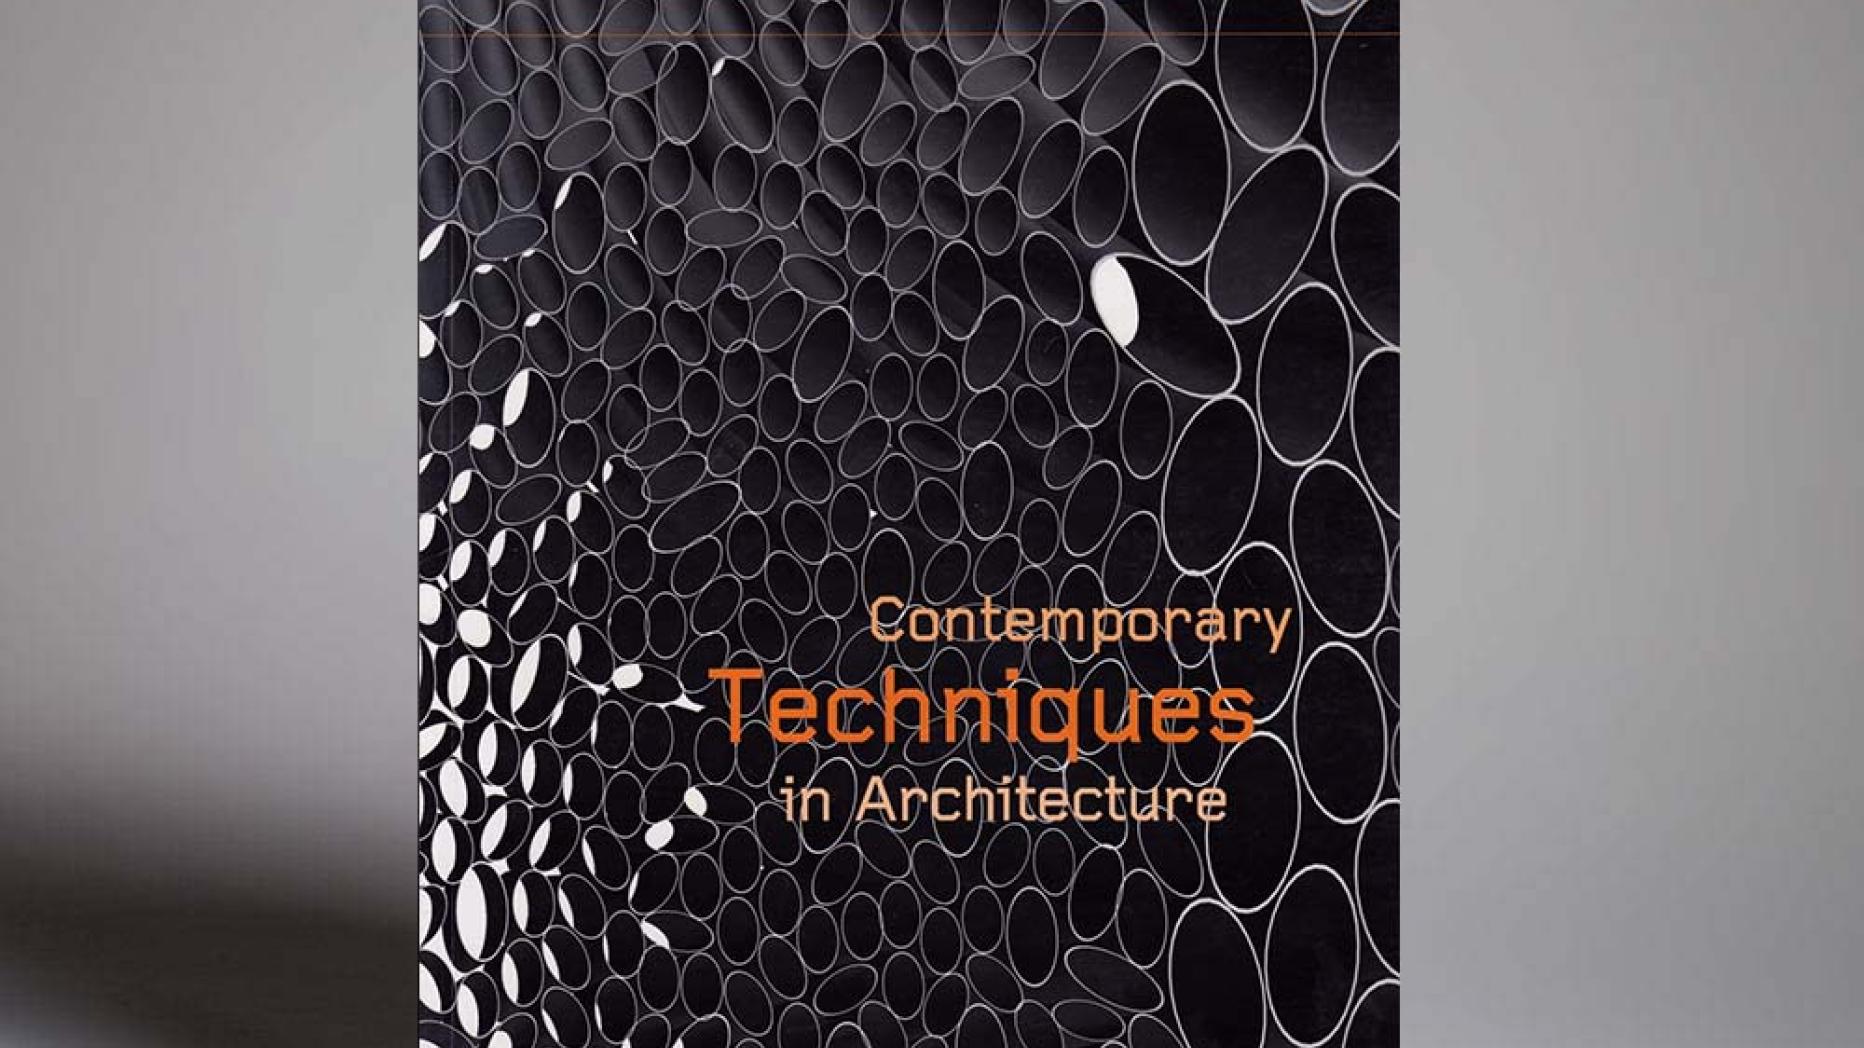  Contemporary Techniques in Architecture Web